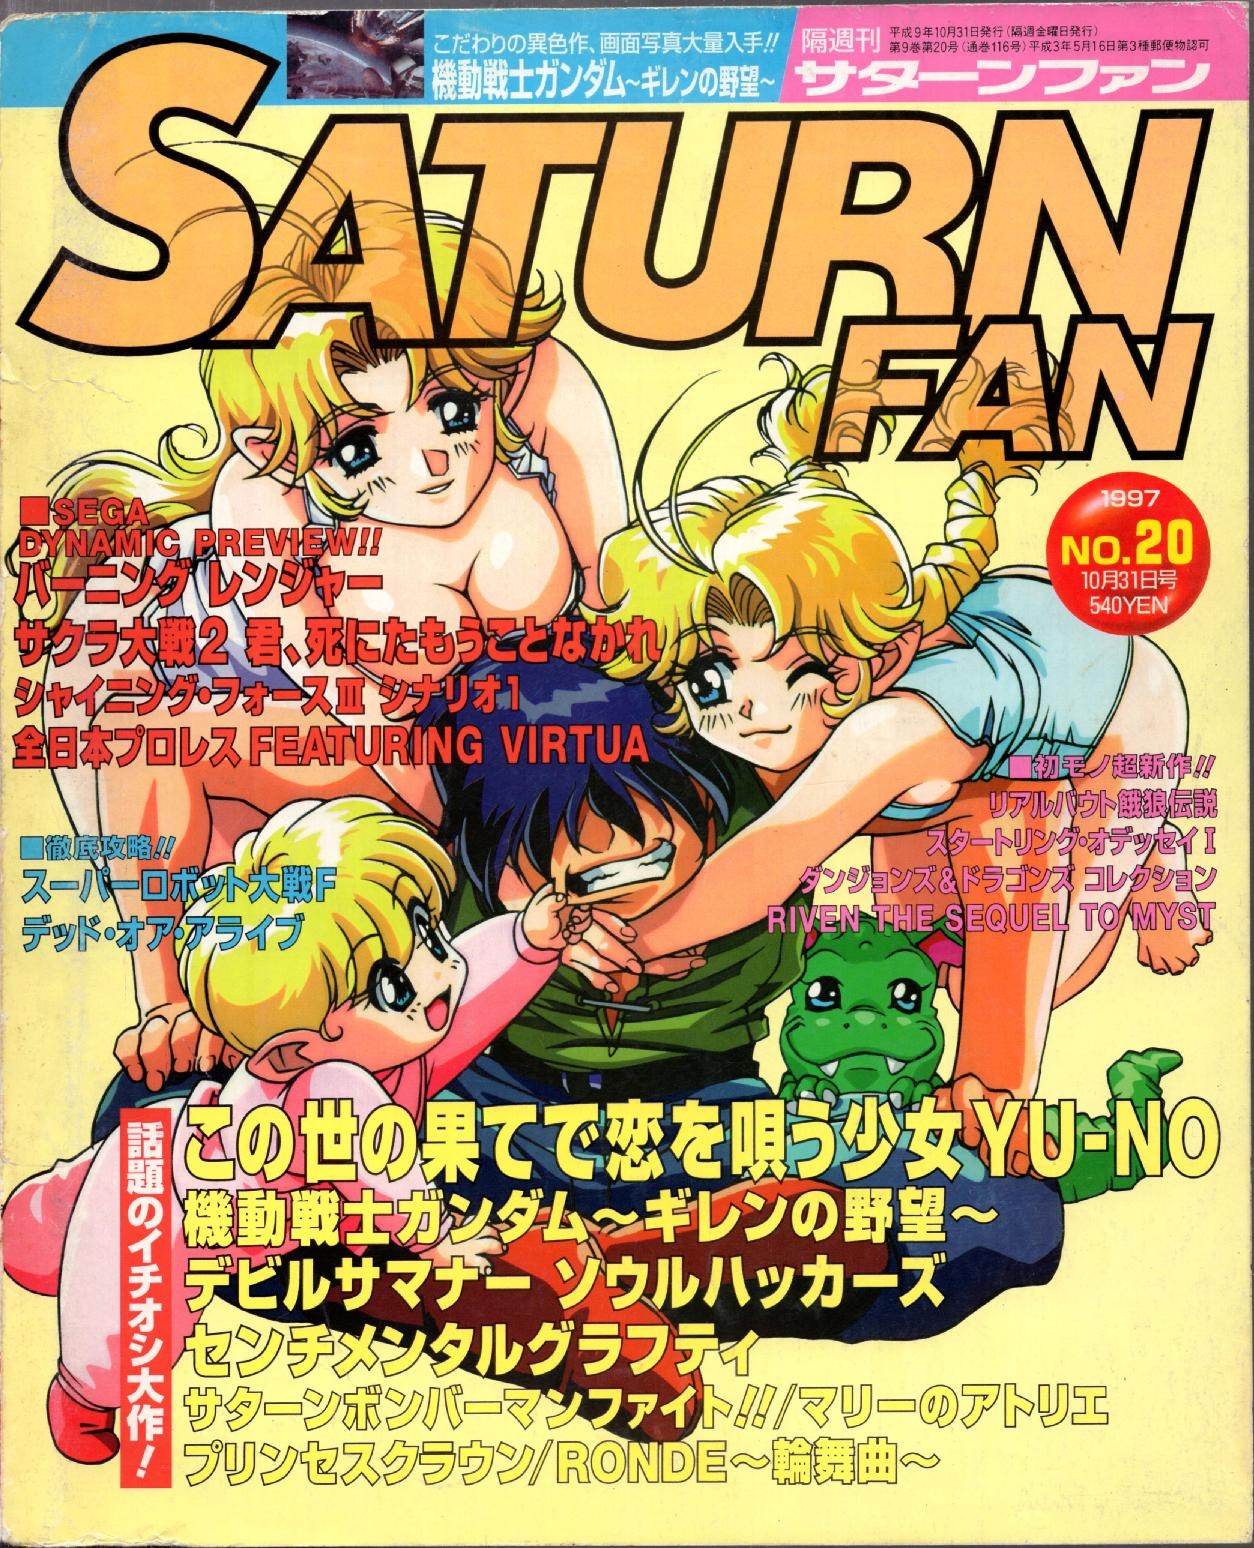 SaturnFan JP 1997-20 19971031.pdf